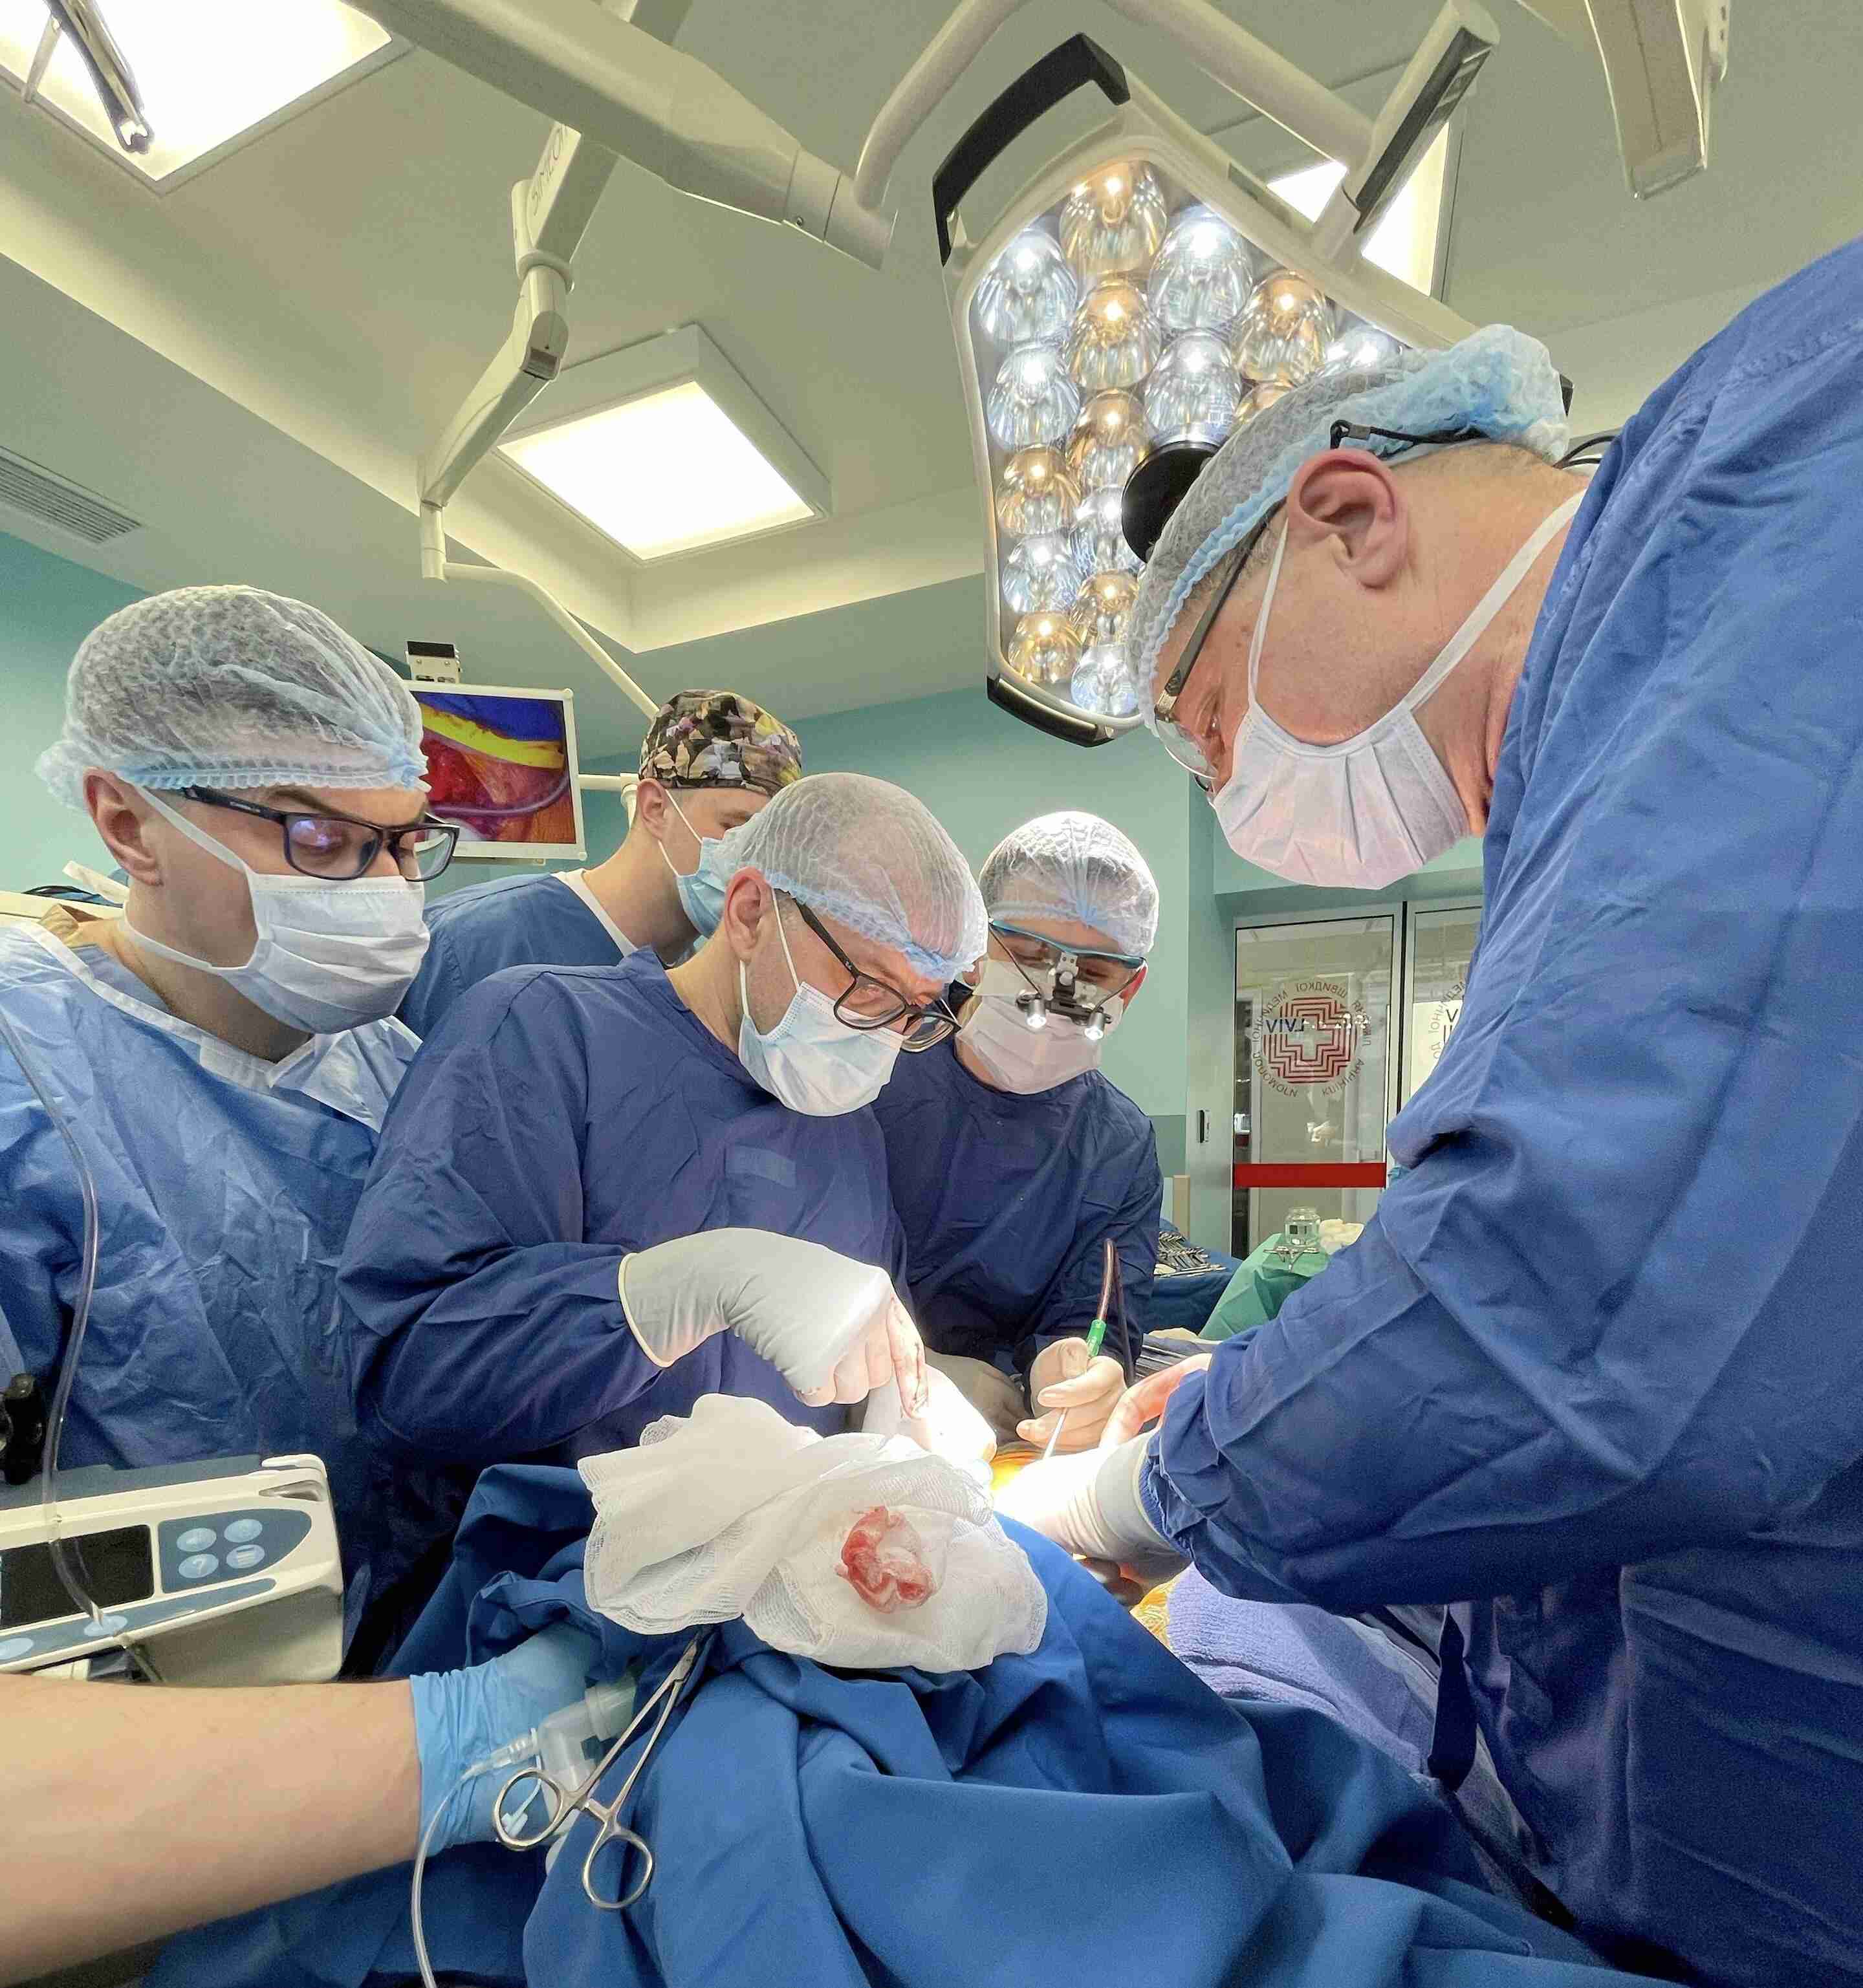 Міг задихнутися будь-якої миті: львівські лікарі врятували життя дитини (ФОТО)